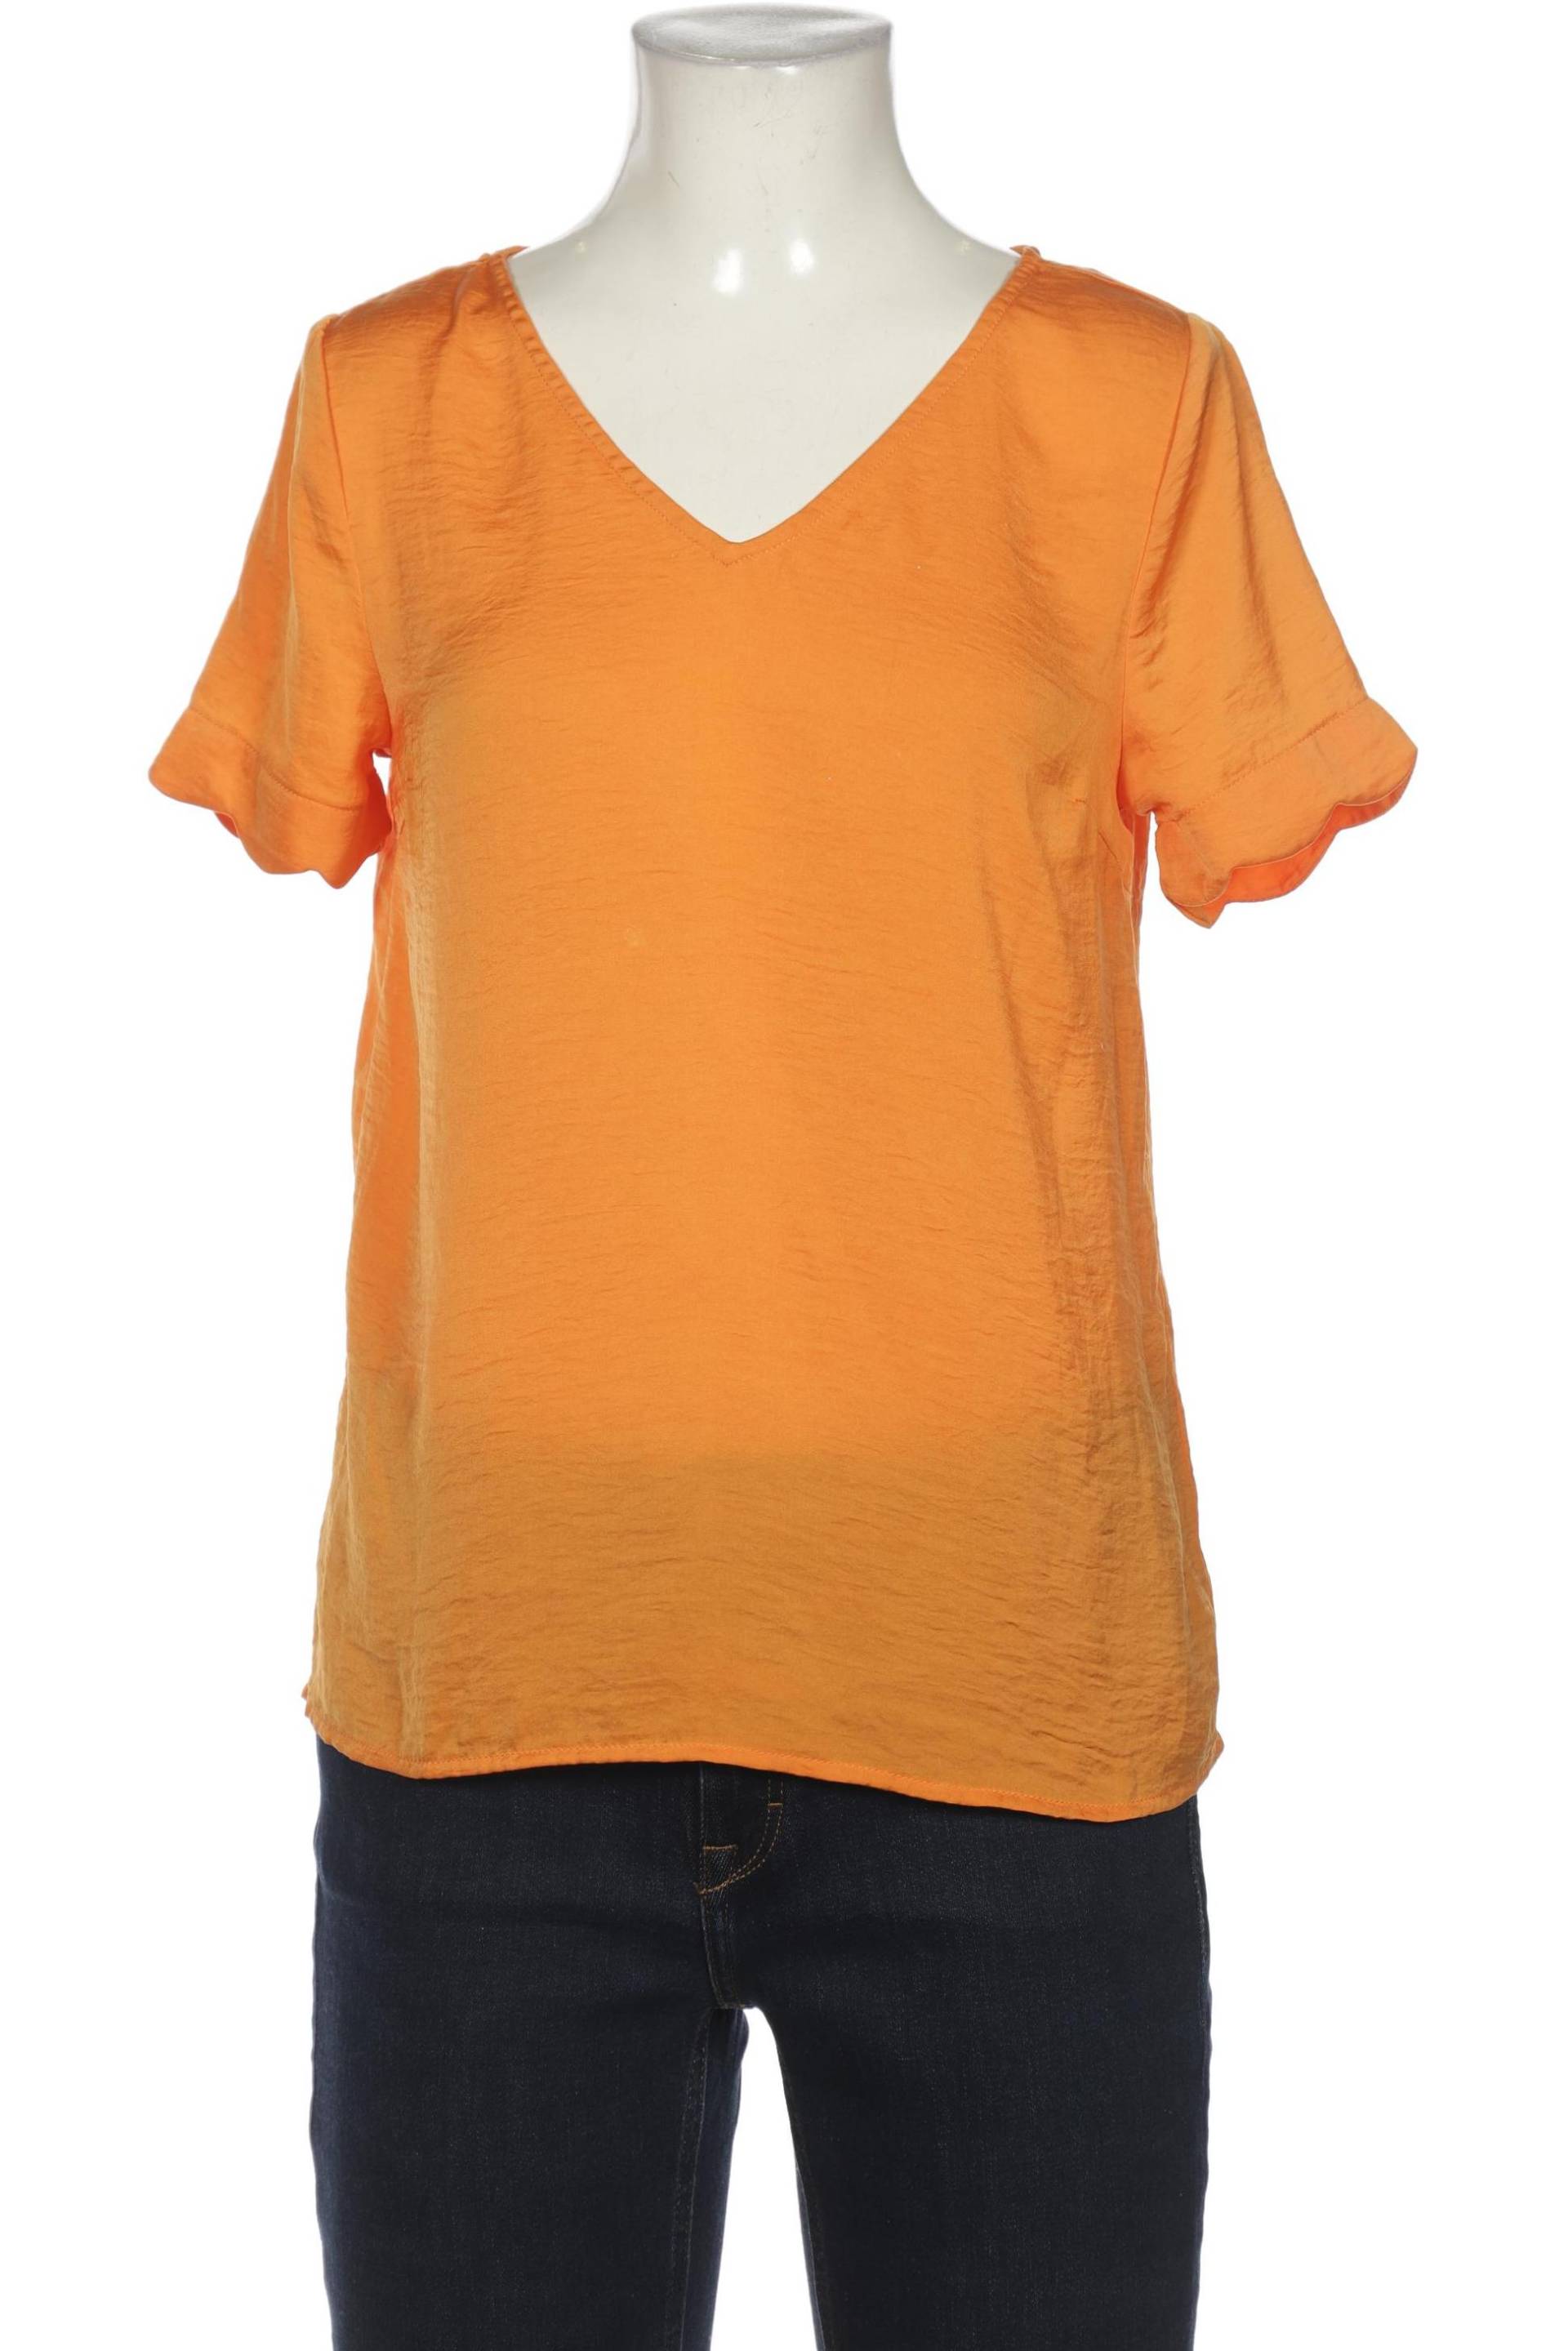 Ichi Damen Bluse, orange, Gr. 34 von Ichi